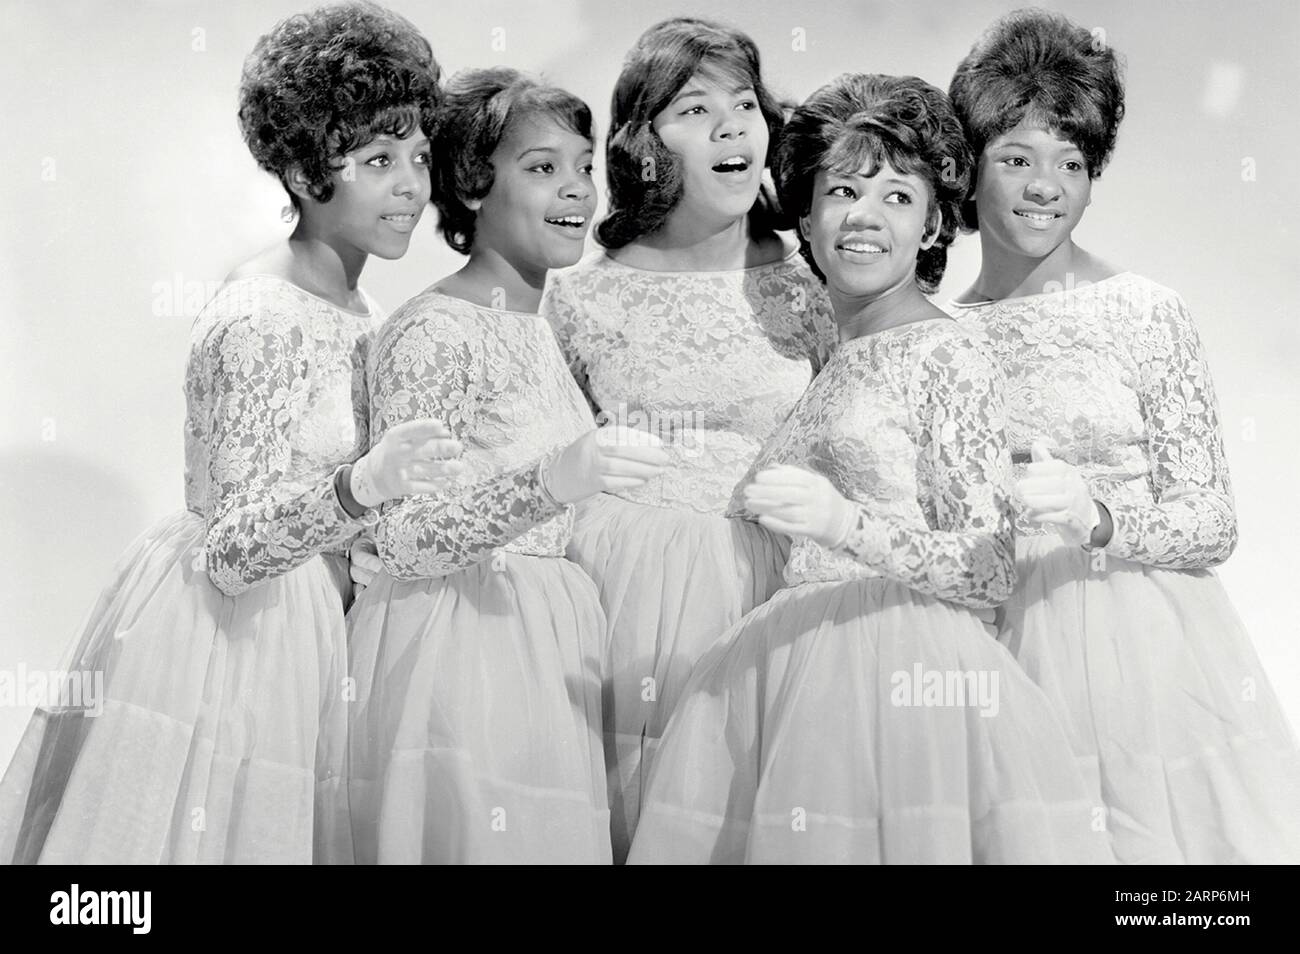 LA FOTO promozionale DEI CRISTALLI del gruppo vocale americano circa 1963 Foto Stock